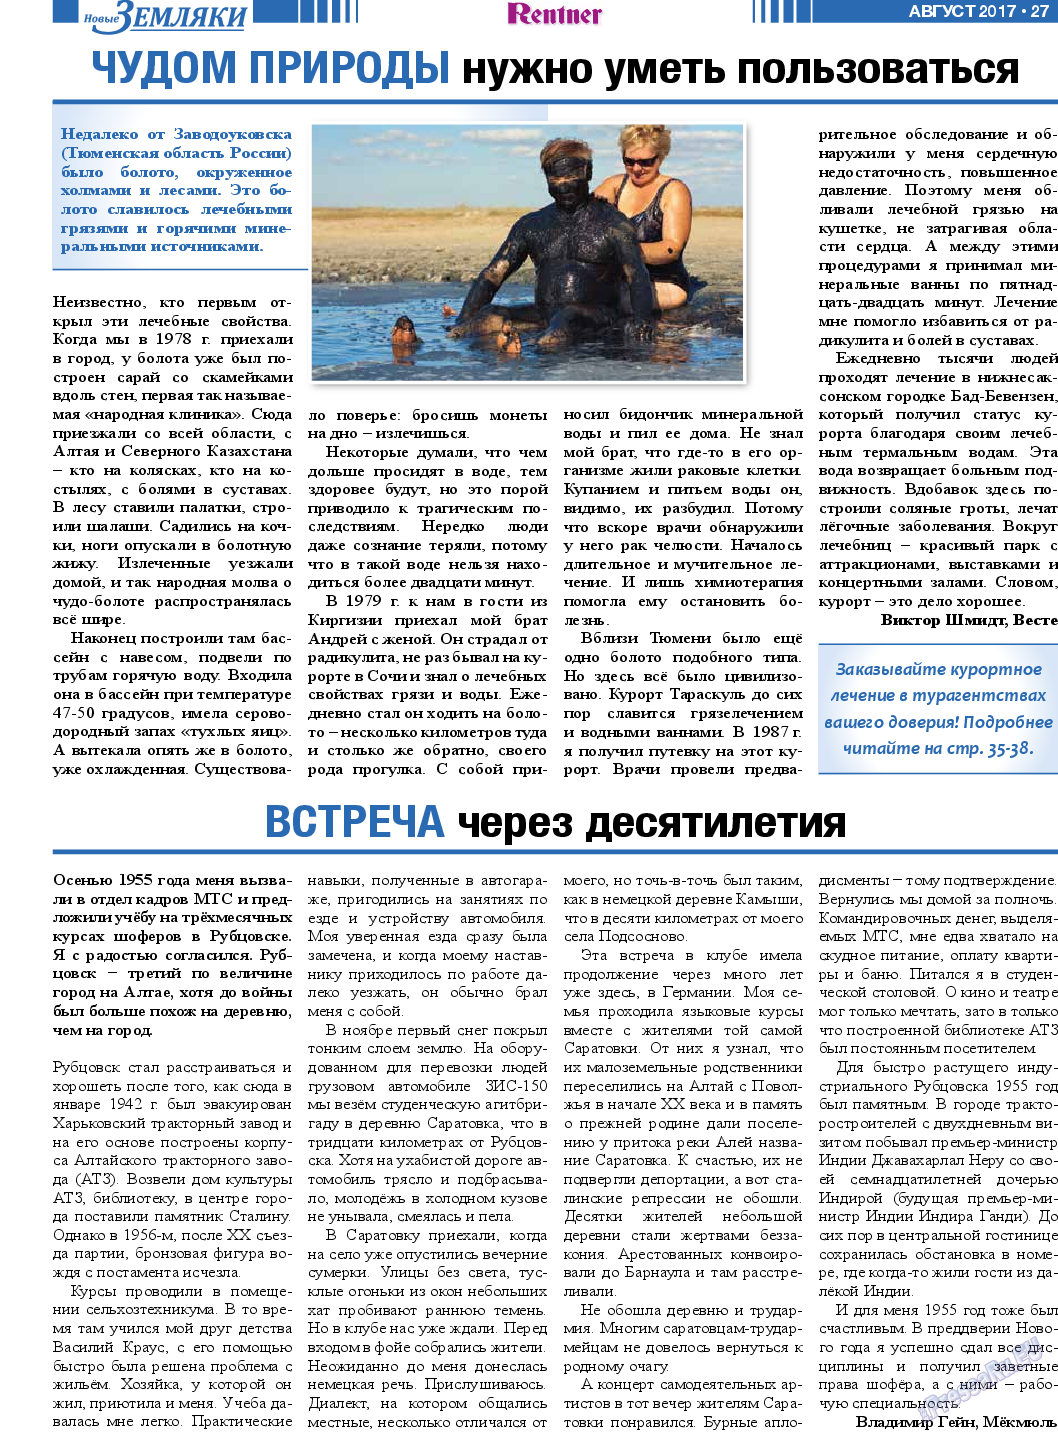 Новые Земляки (газета). 2017 год, номер 8, стр. 27